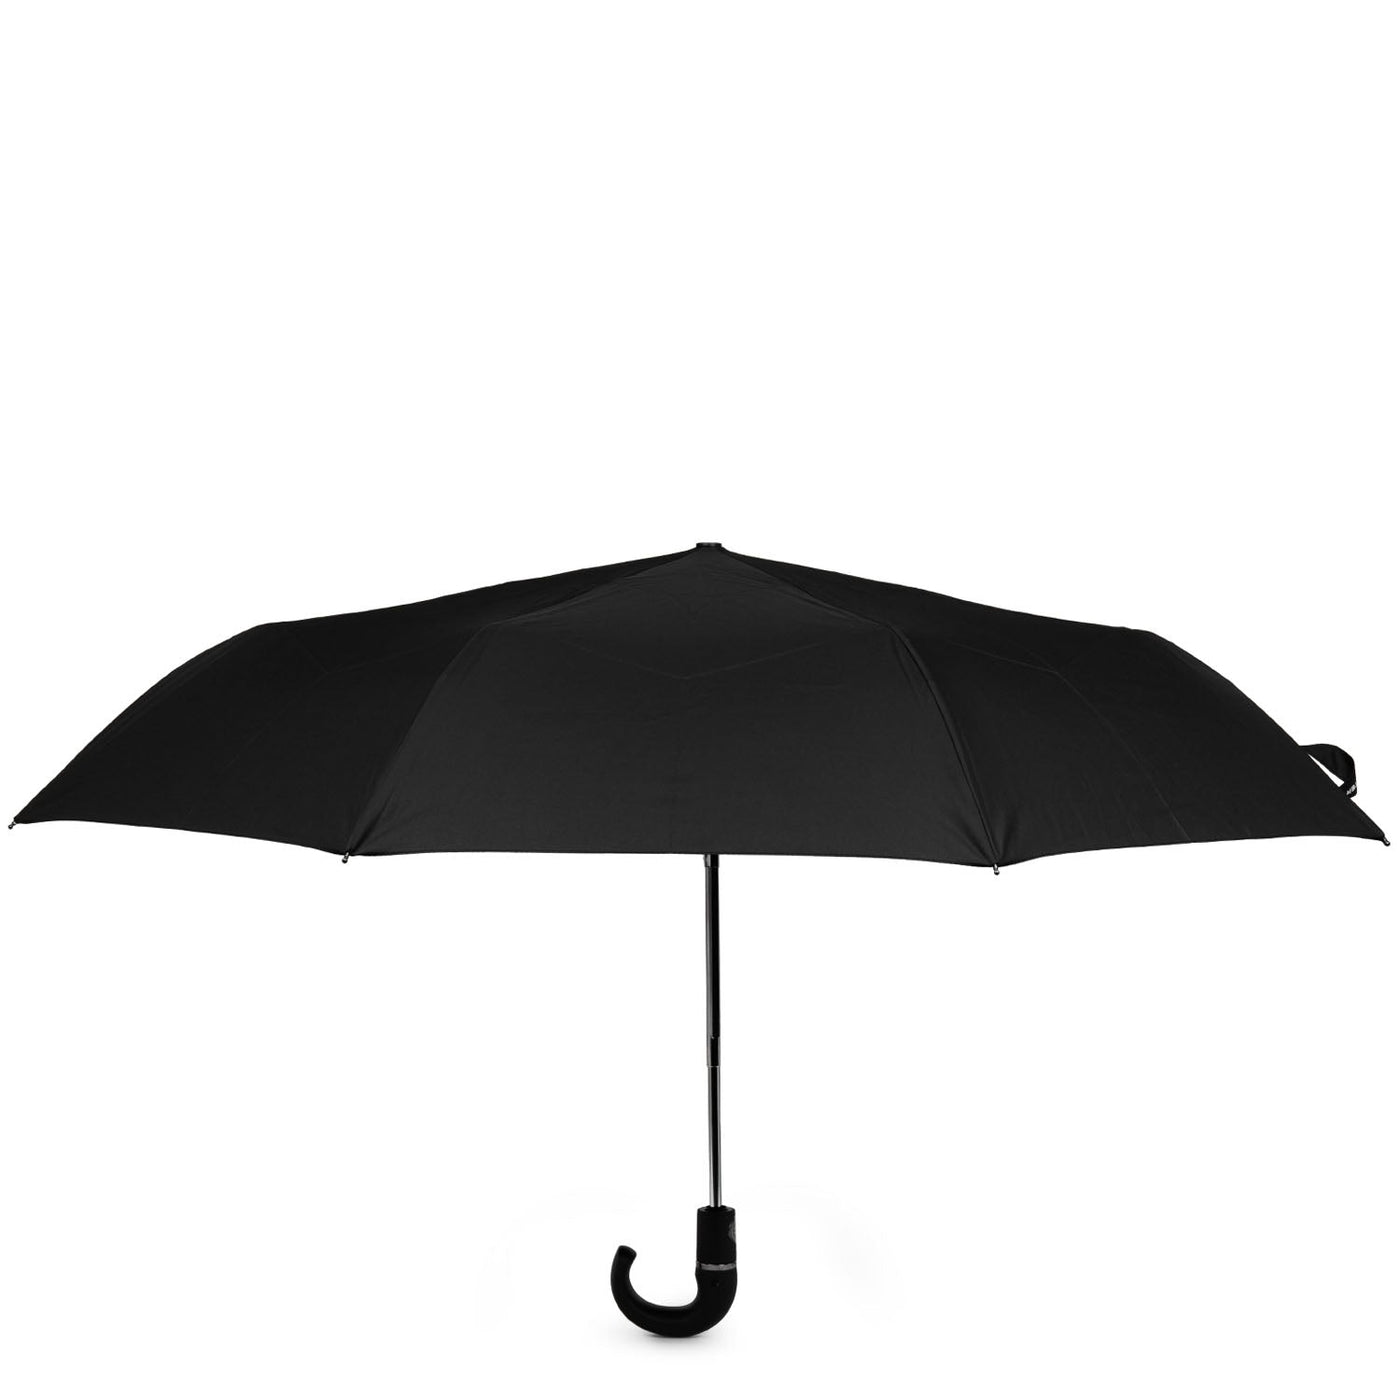 umbrella - accessoires parapluies #couleur_noir